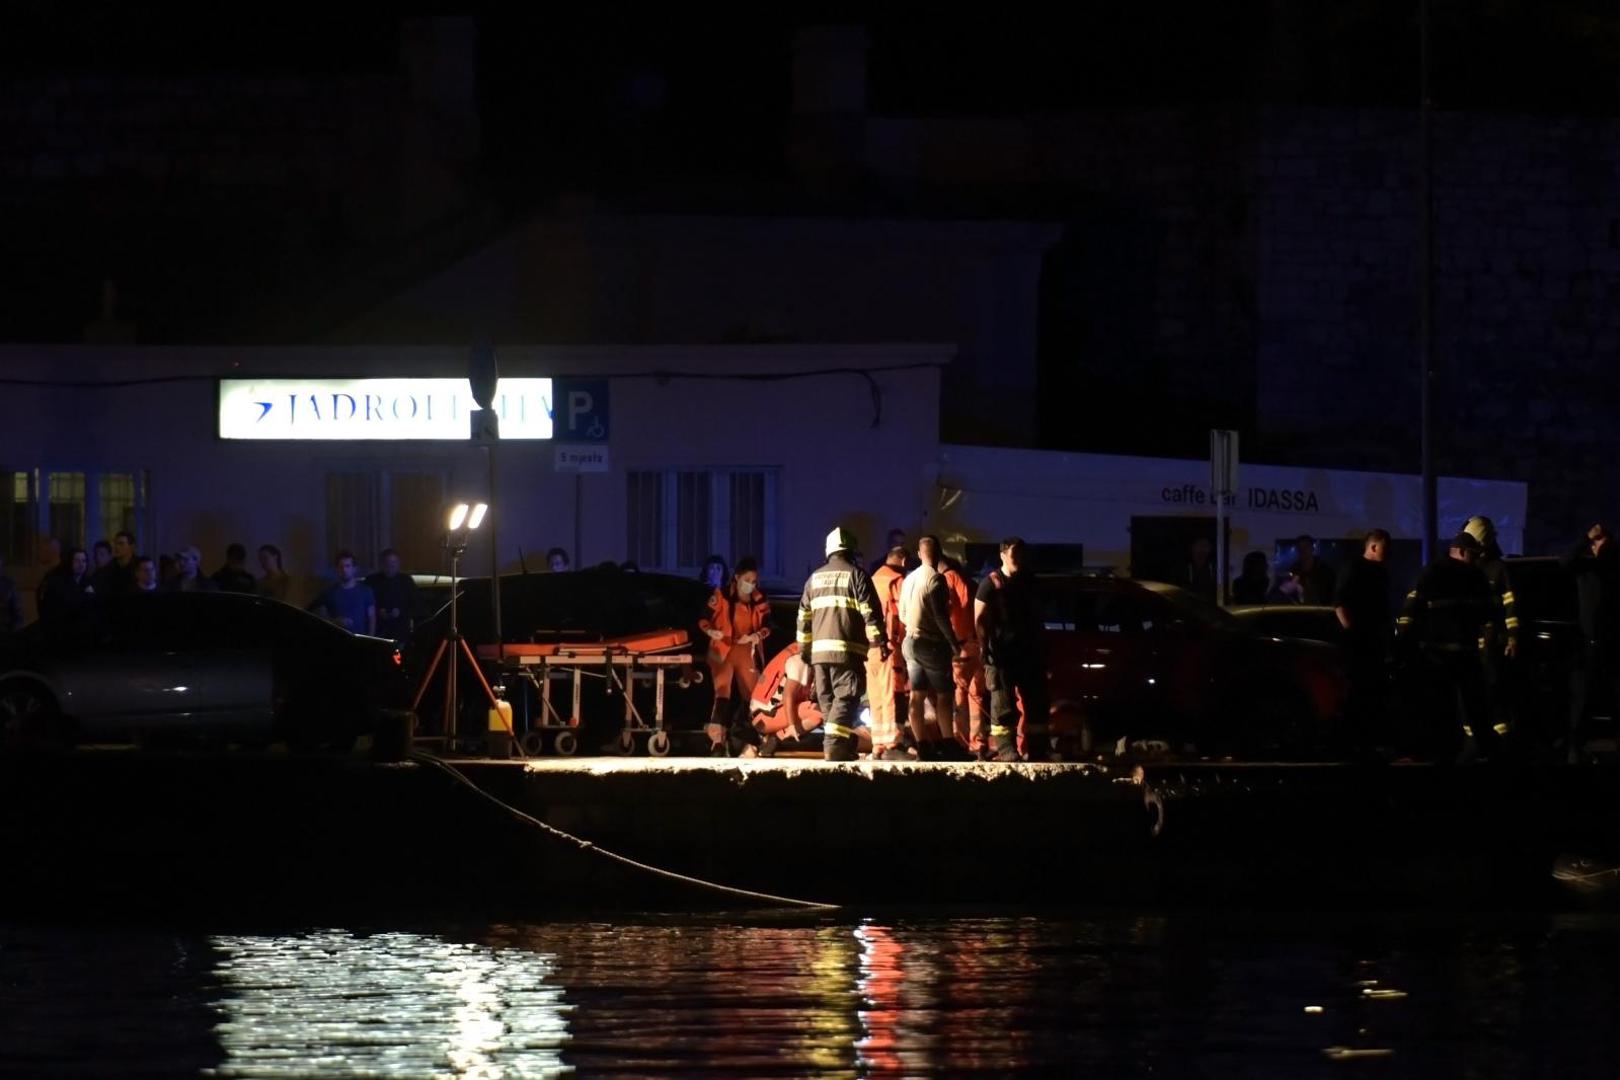 04.05.2020., Zadar - Sinoc oko 23 sata dogodila se prometna nesreca u kojoj je vozilo Audi zavrsilo u moru u gradskoj luci. Prema nesluzbenim informacijama dvije su osobe izgubile zivot. Photo: Dino Stanin/PIXSELL